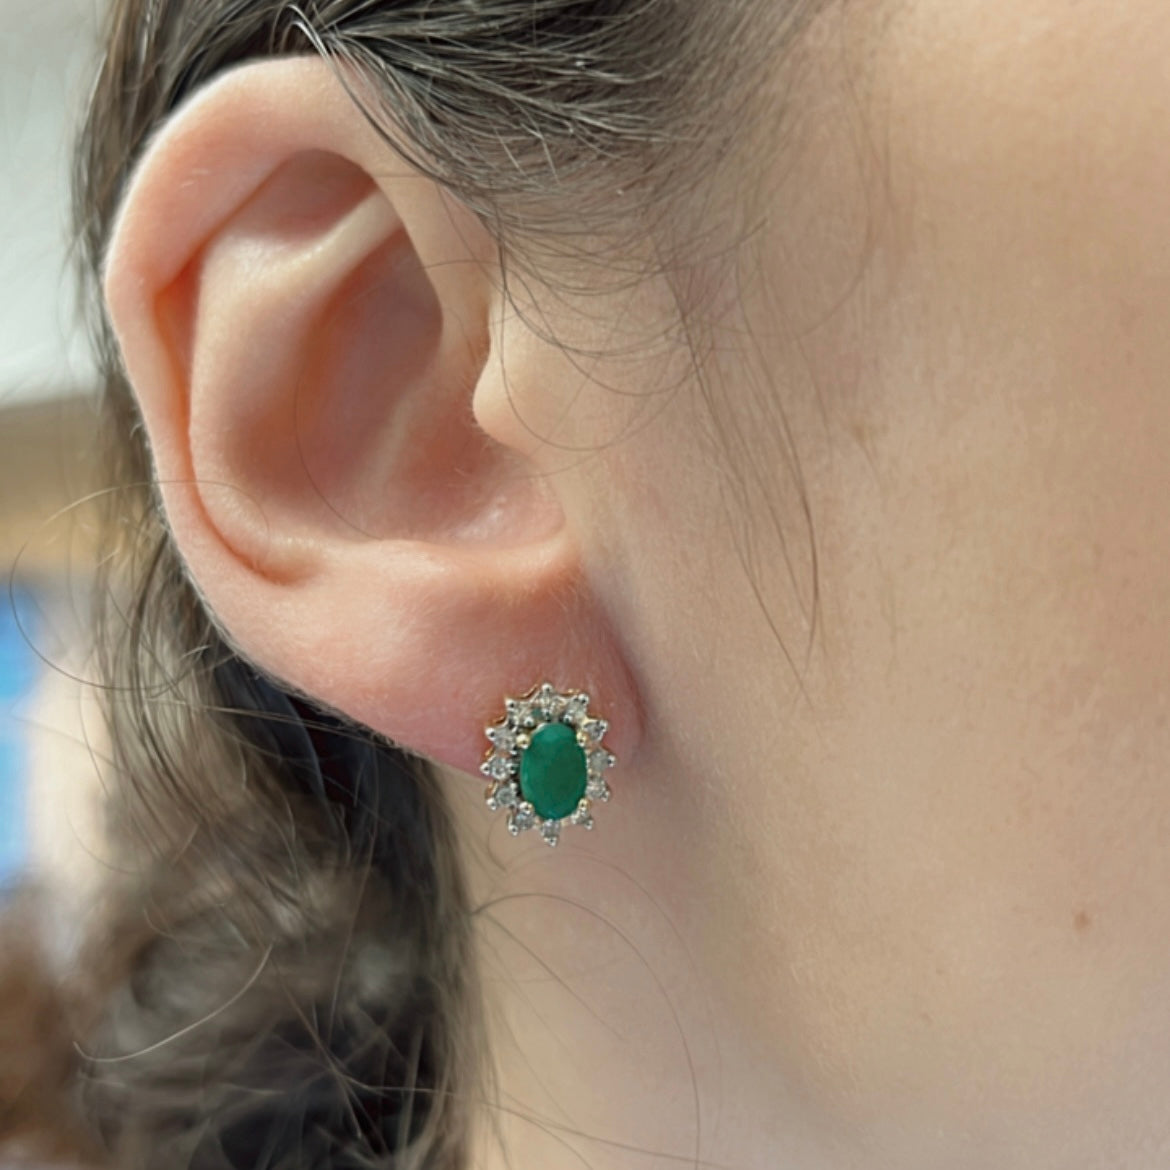 Emerald & Diamond 10k Earrings | 0.7ctw 0.18ctw |